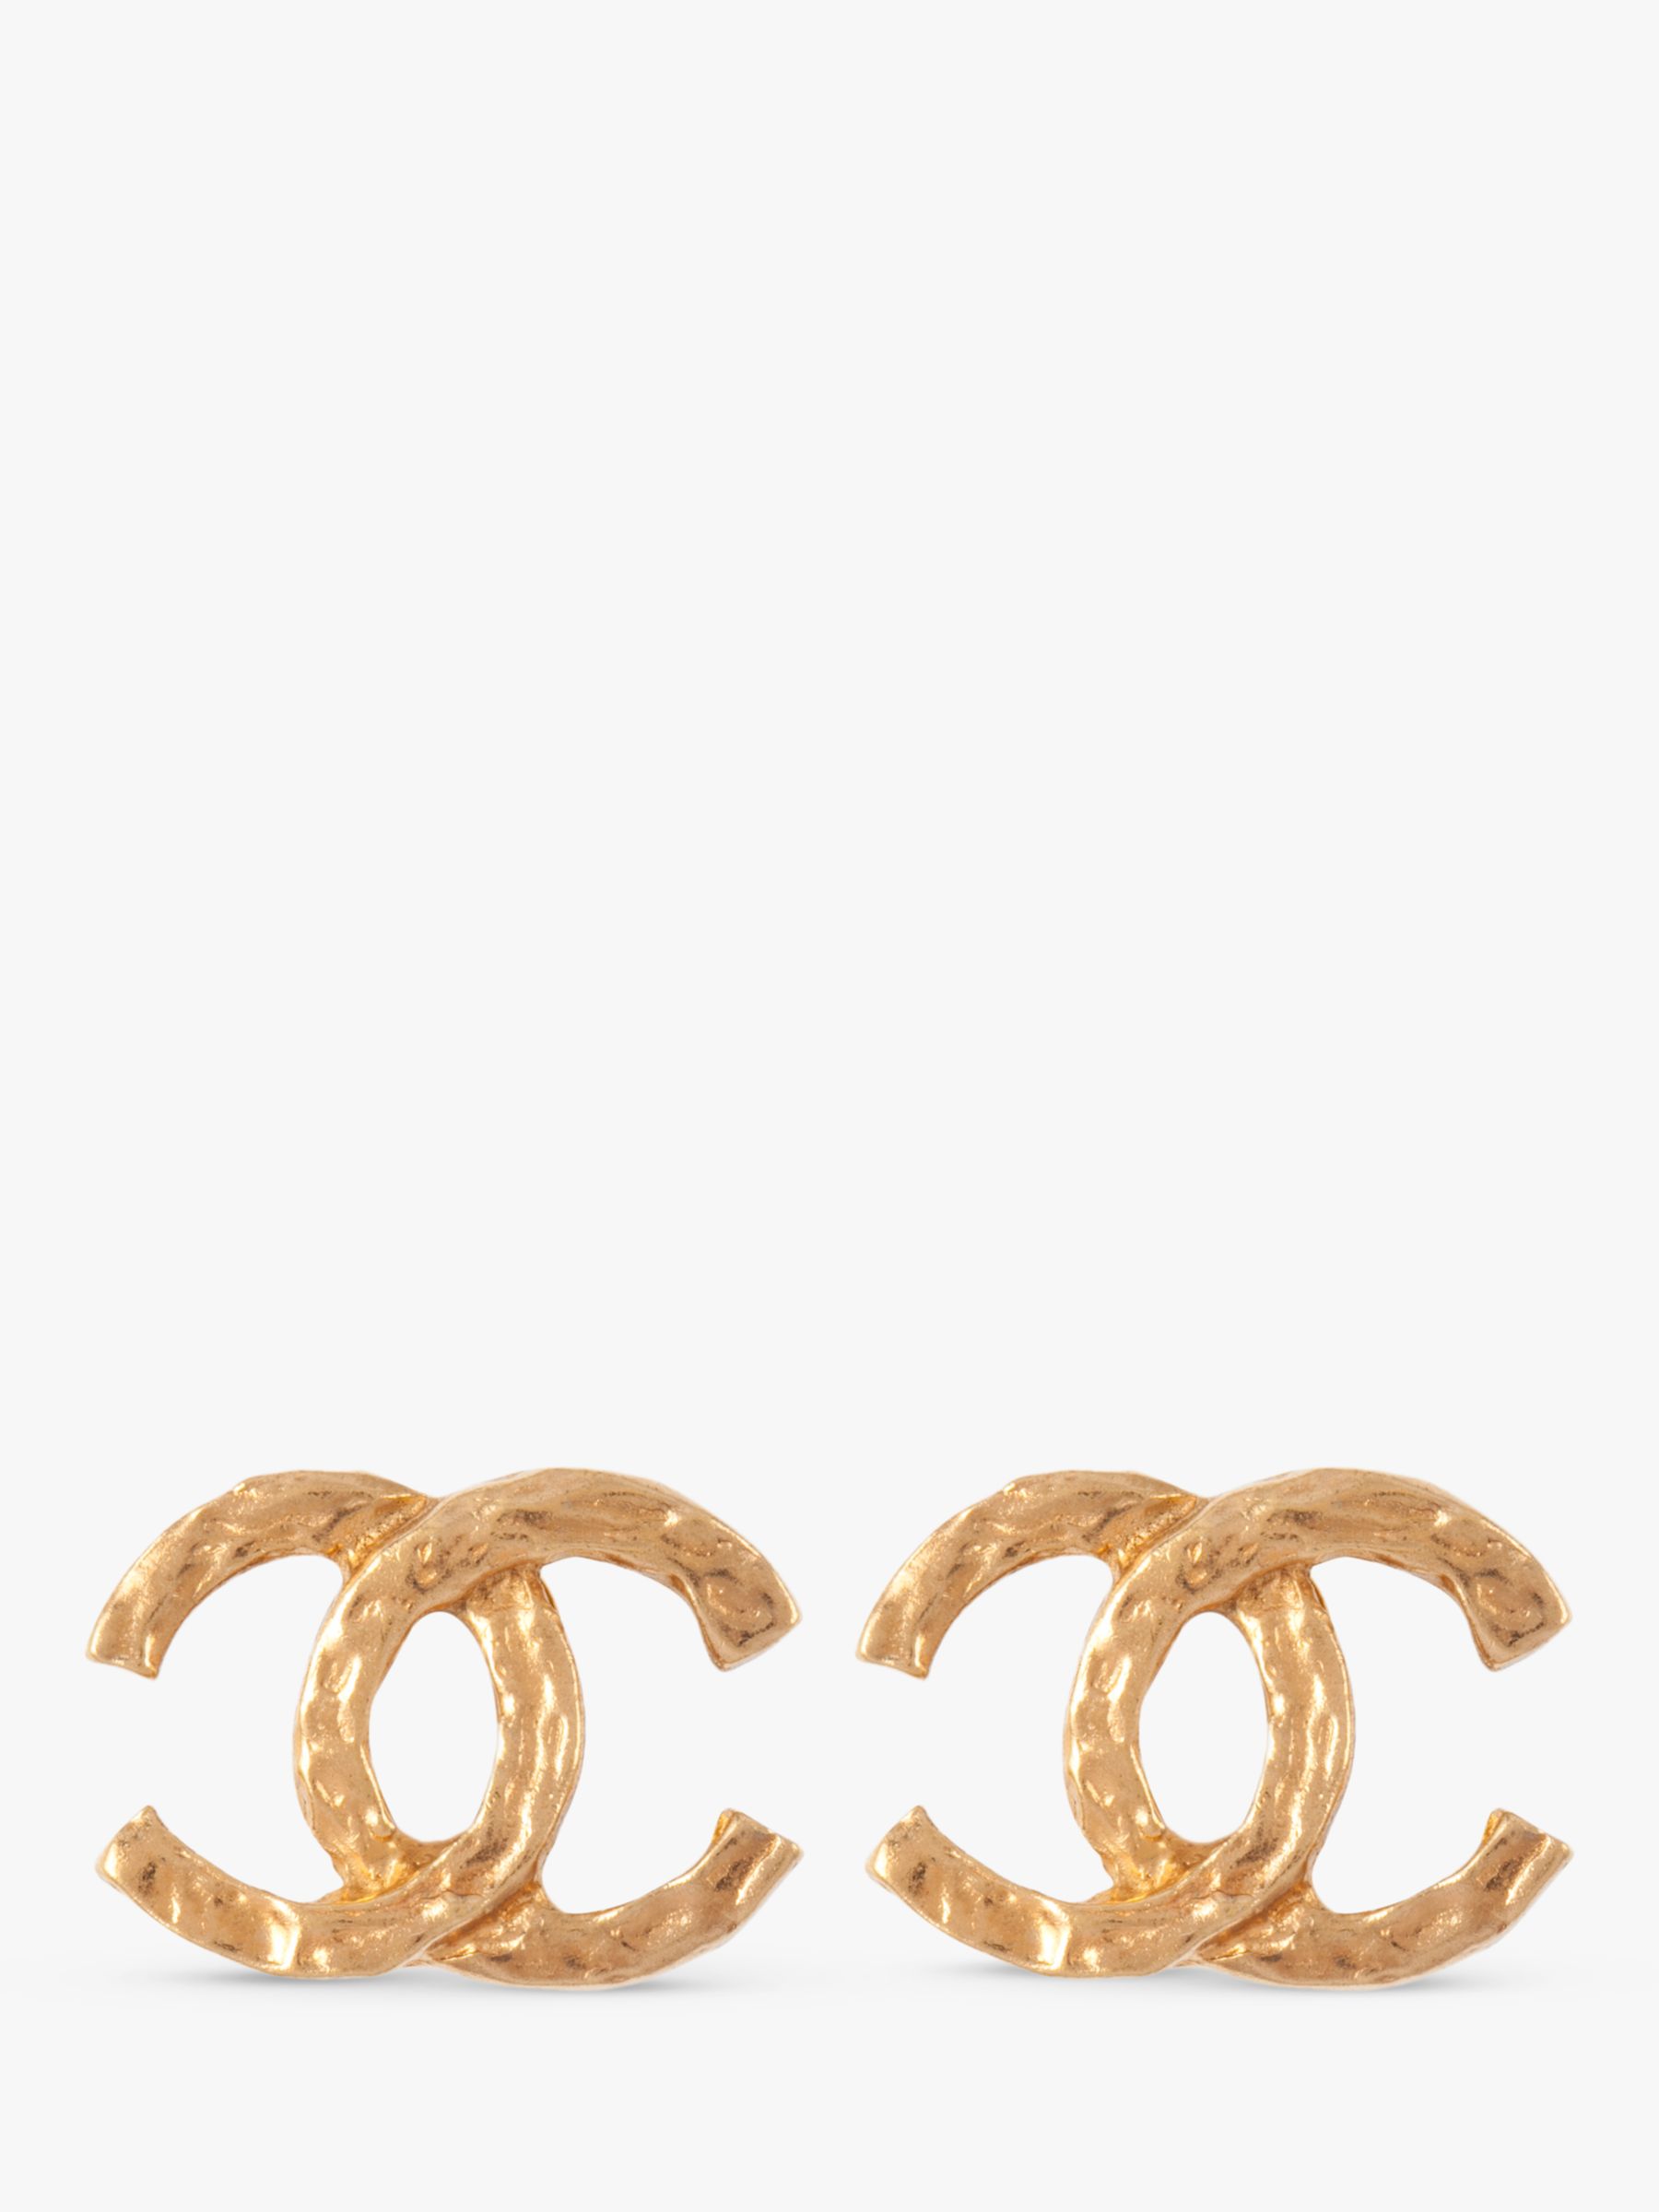 Chanel – Antique Jewelry University